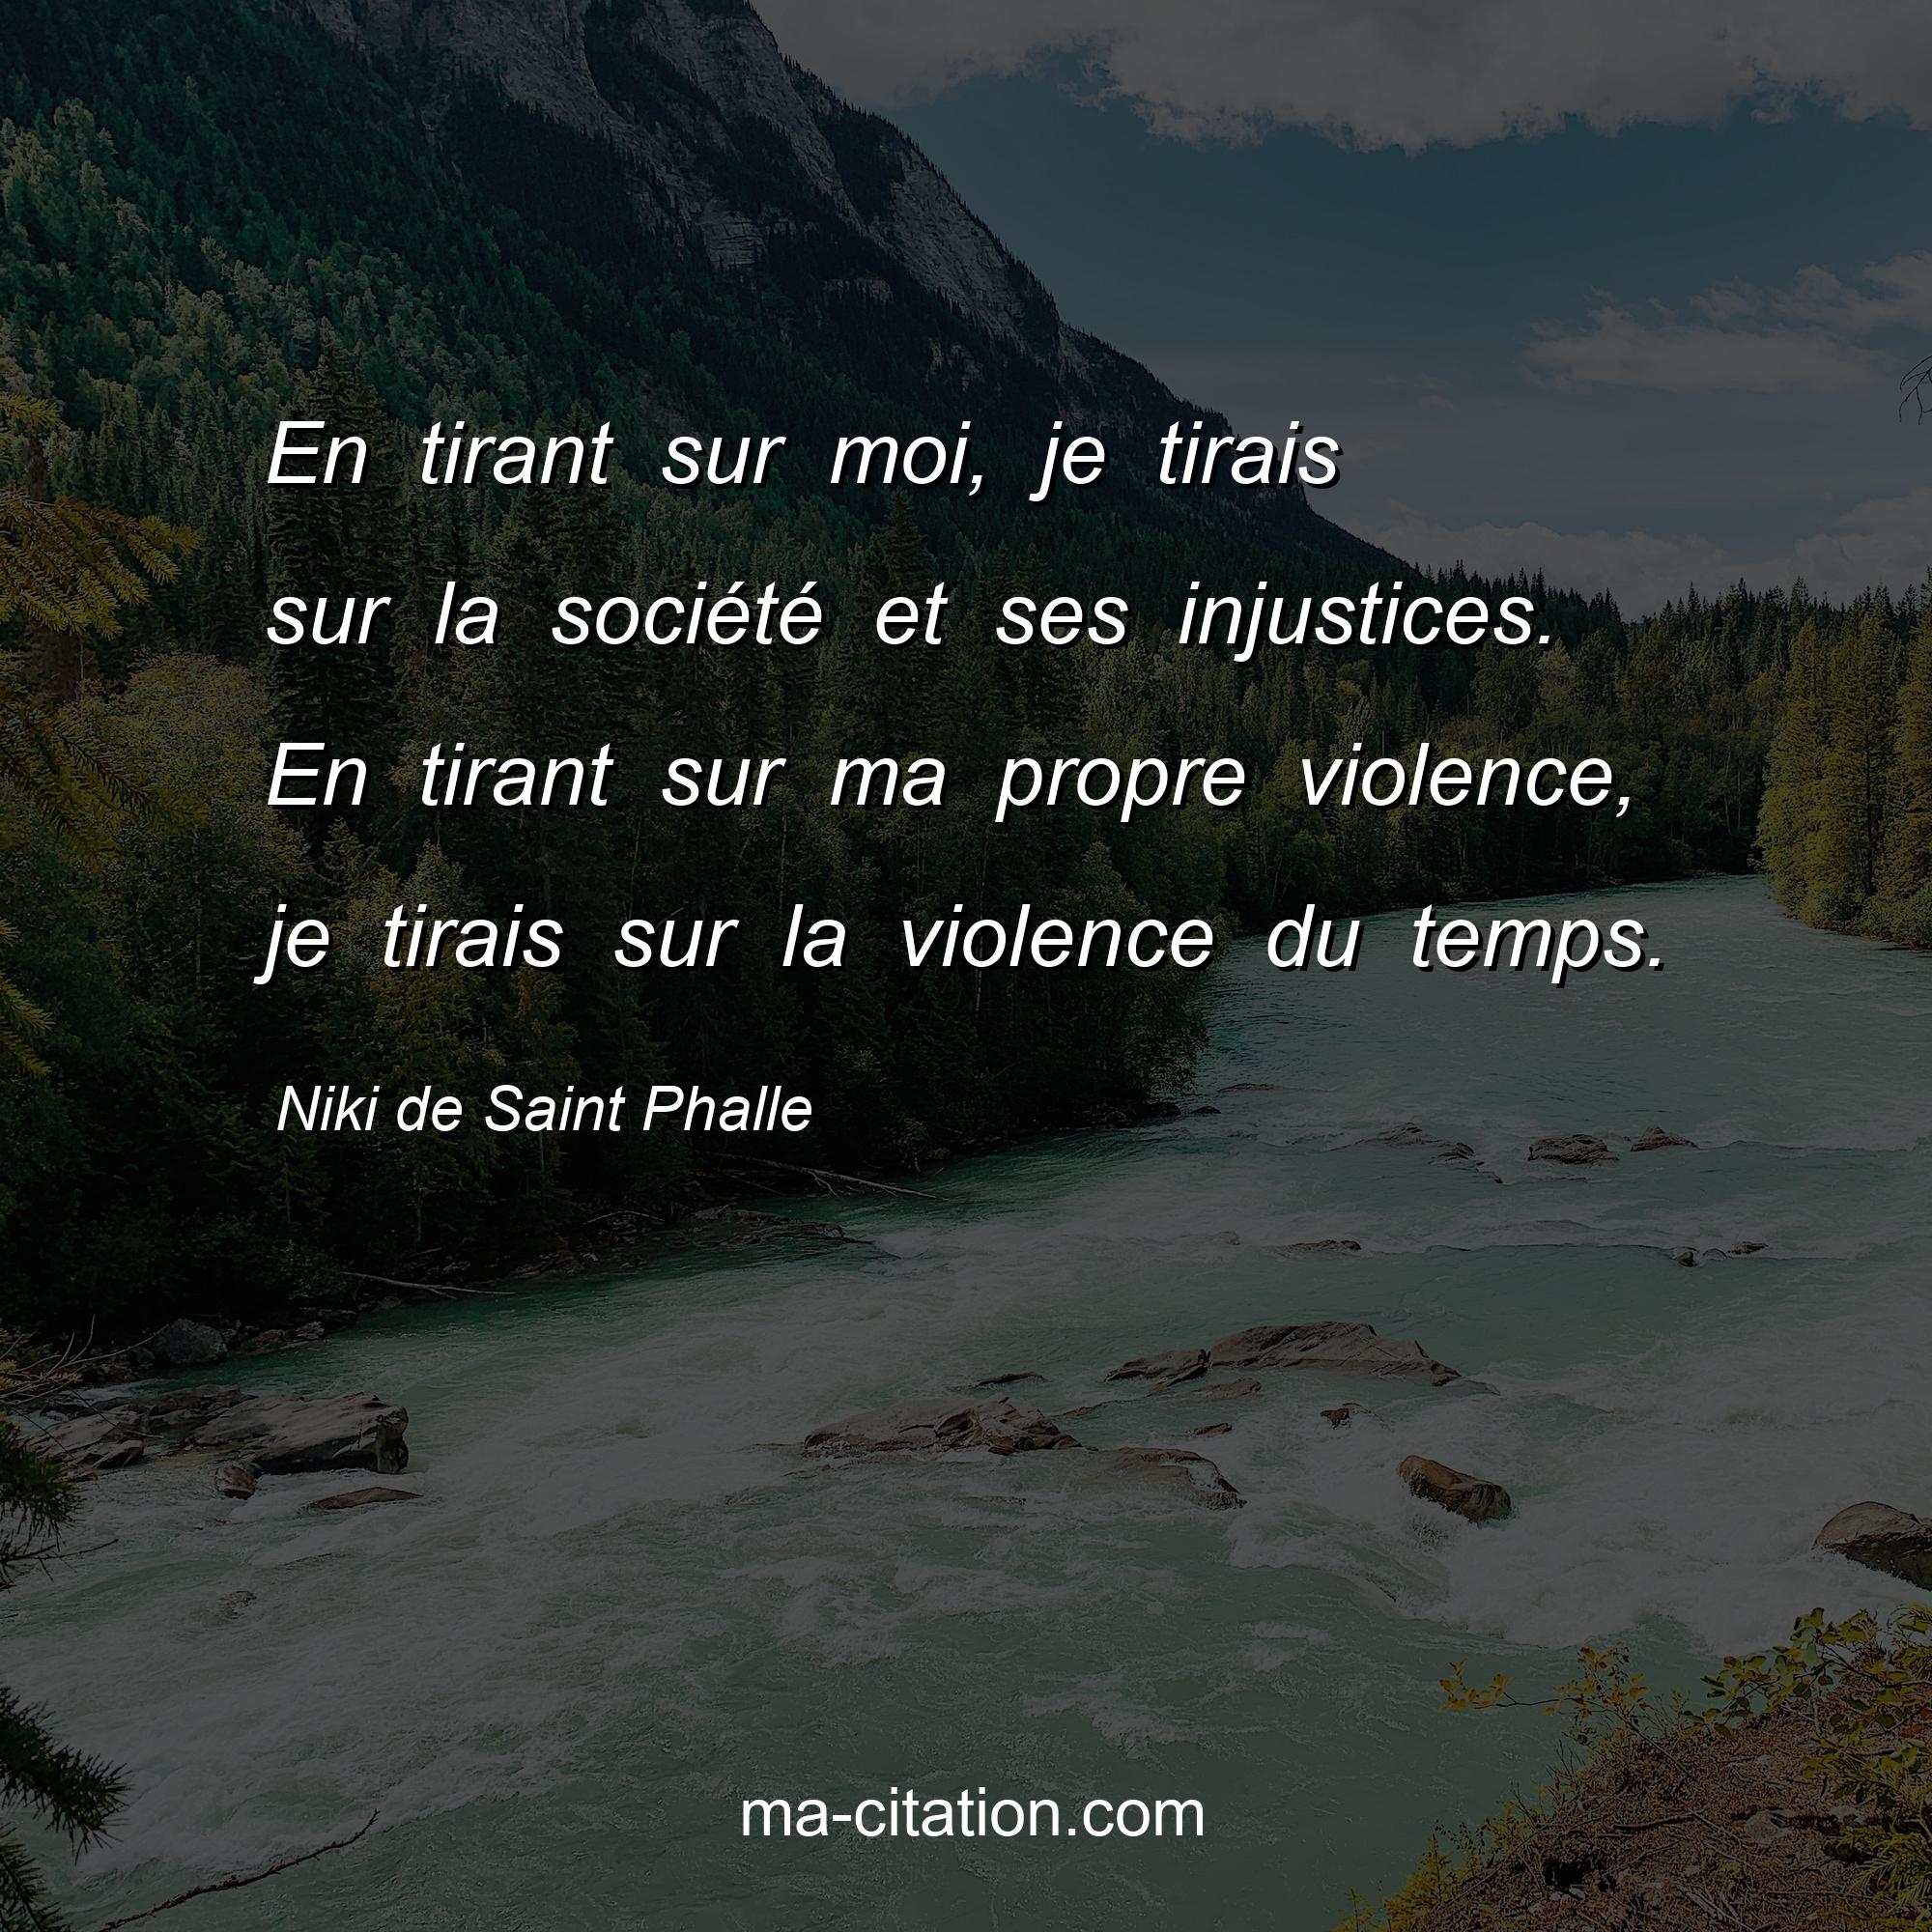 Niki de Saint Phalle : En tirant sur moi, je tirais sur la société et ses injustices. En tirant sur ma propre violence, je tirais sur la violence du temps.